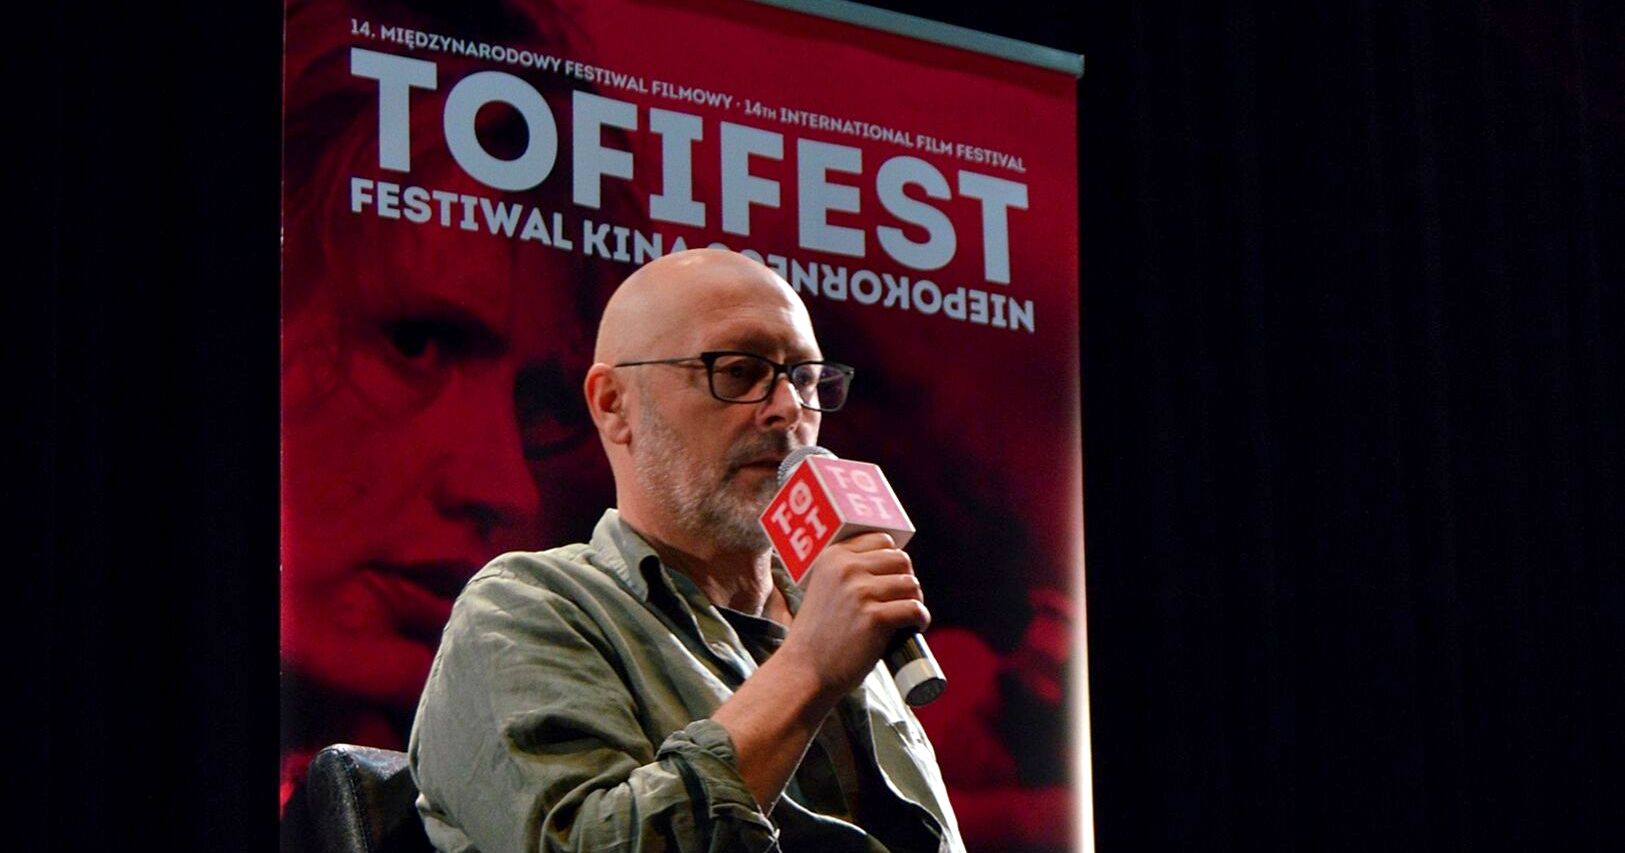 Tofifest 2016: Wojciech Smarzowski – pokorny niepokorny